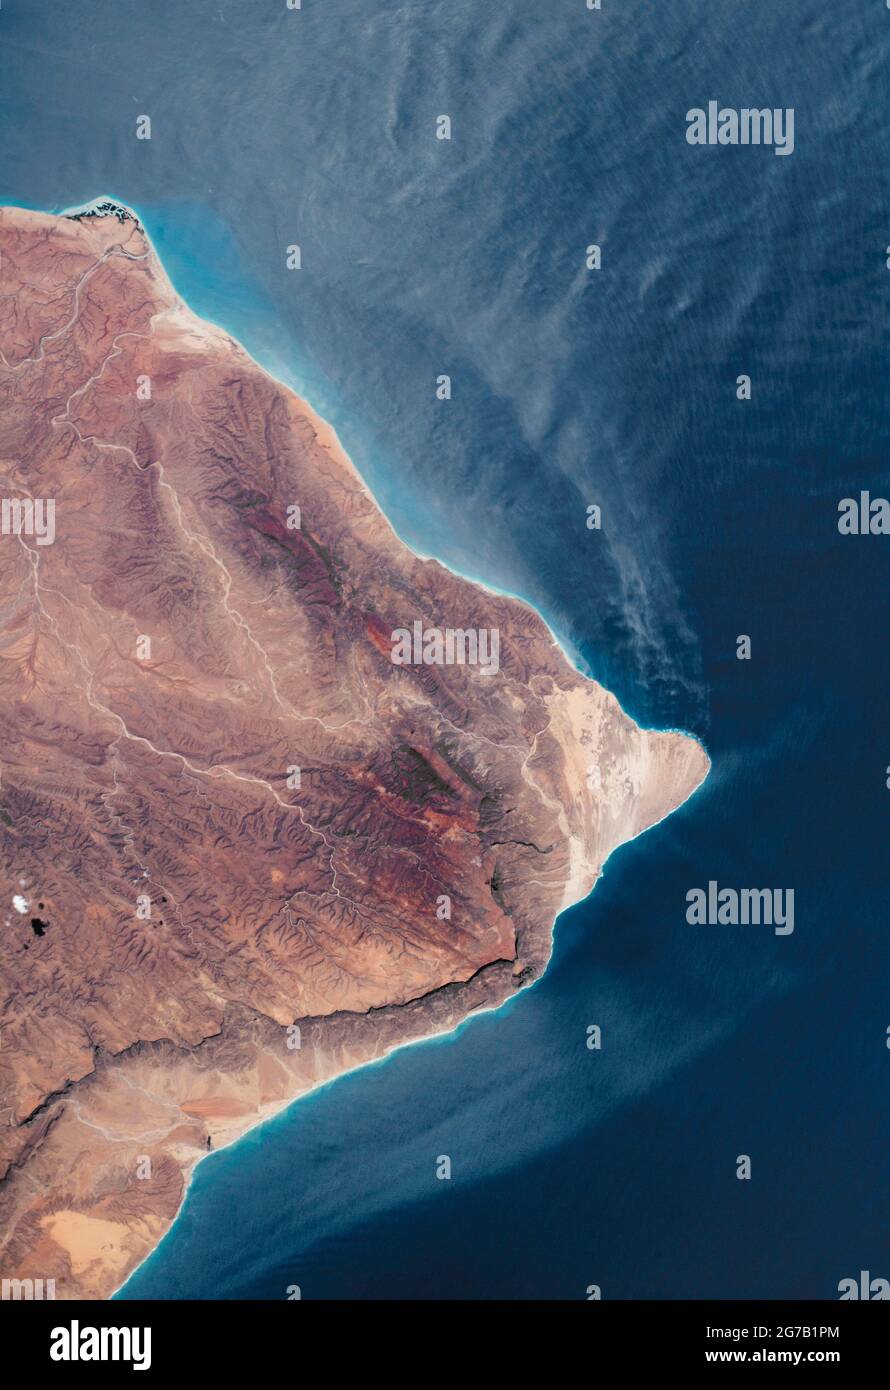 Il Corno d'Africa, Somalia fotografata dalla Stazione spaziale Internazionale (ISS). La parte più orientale dell'Africa. Raas Caseyr, storicamente noto come Capo Guardafui, si trova all'incrocio tra il Golfo di Aden e l'Oceano Indiano. La costa è aspra, con montagne, letti di fiume asciutti, un piccolo delta, e ripide scogliere che gettano ombre sul paesaggio. Giugno 2018. Una versione ottimizzata e potenziata digitalmente di un'immagine NASA / credito NASA Foto Stock